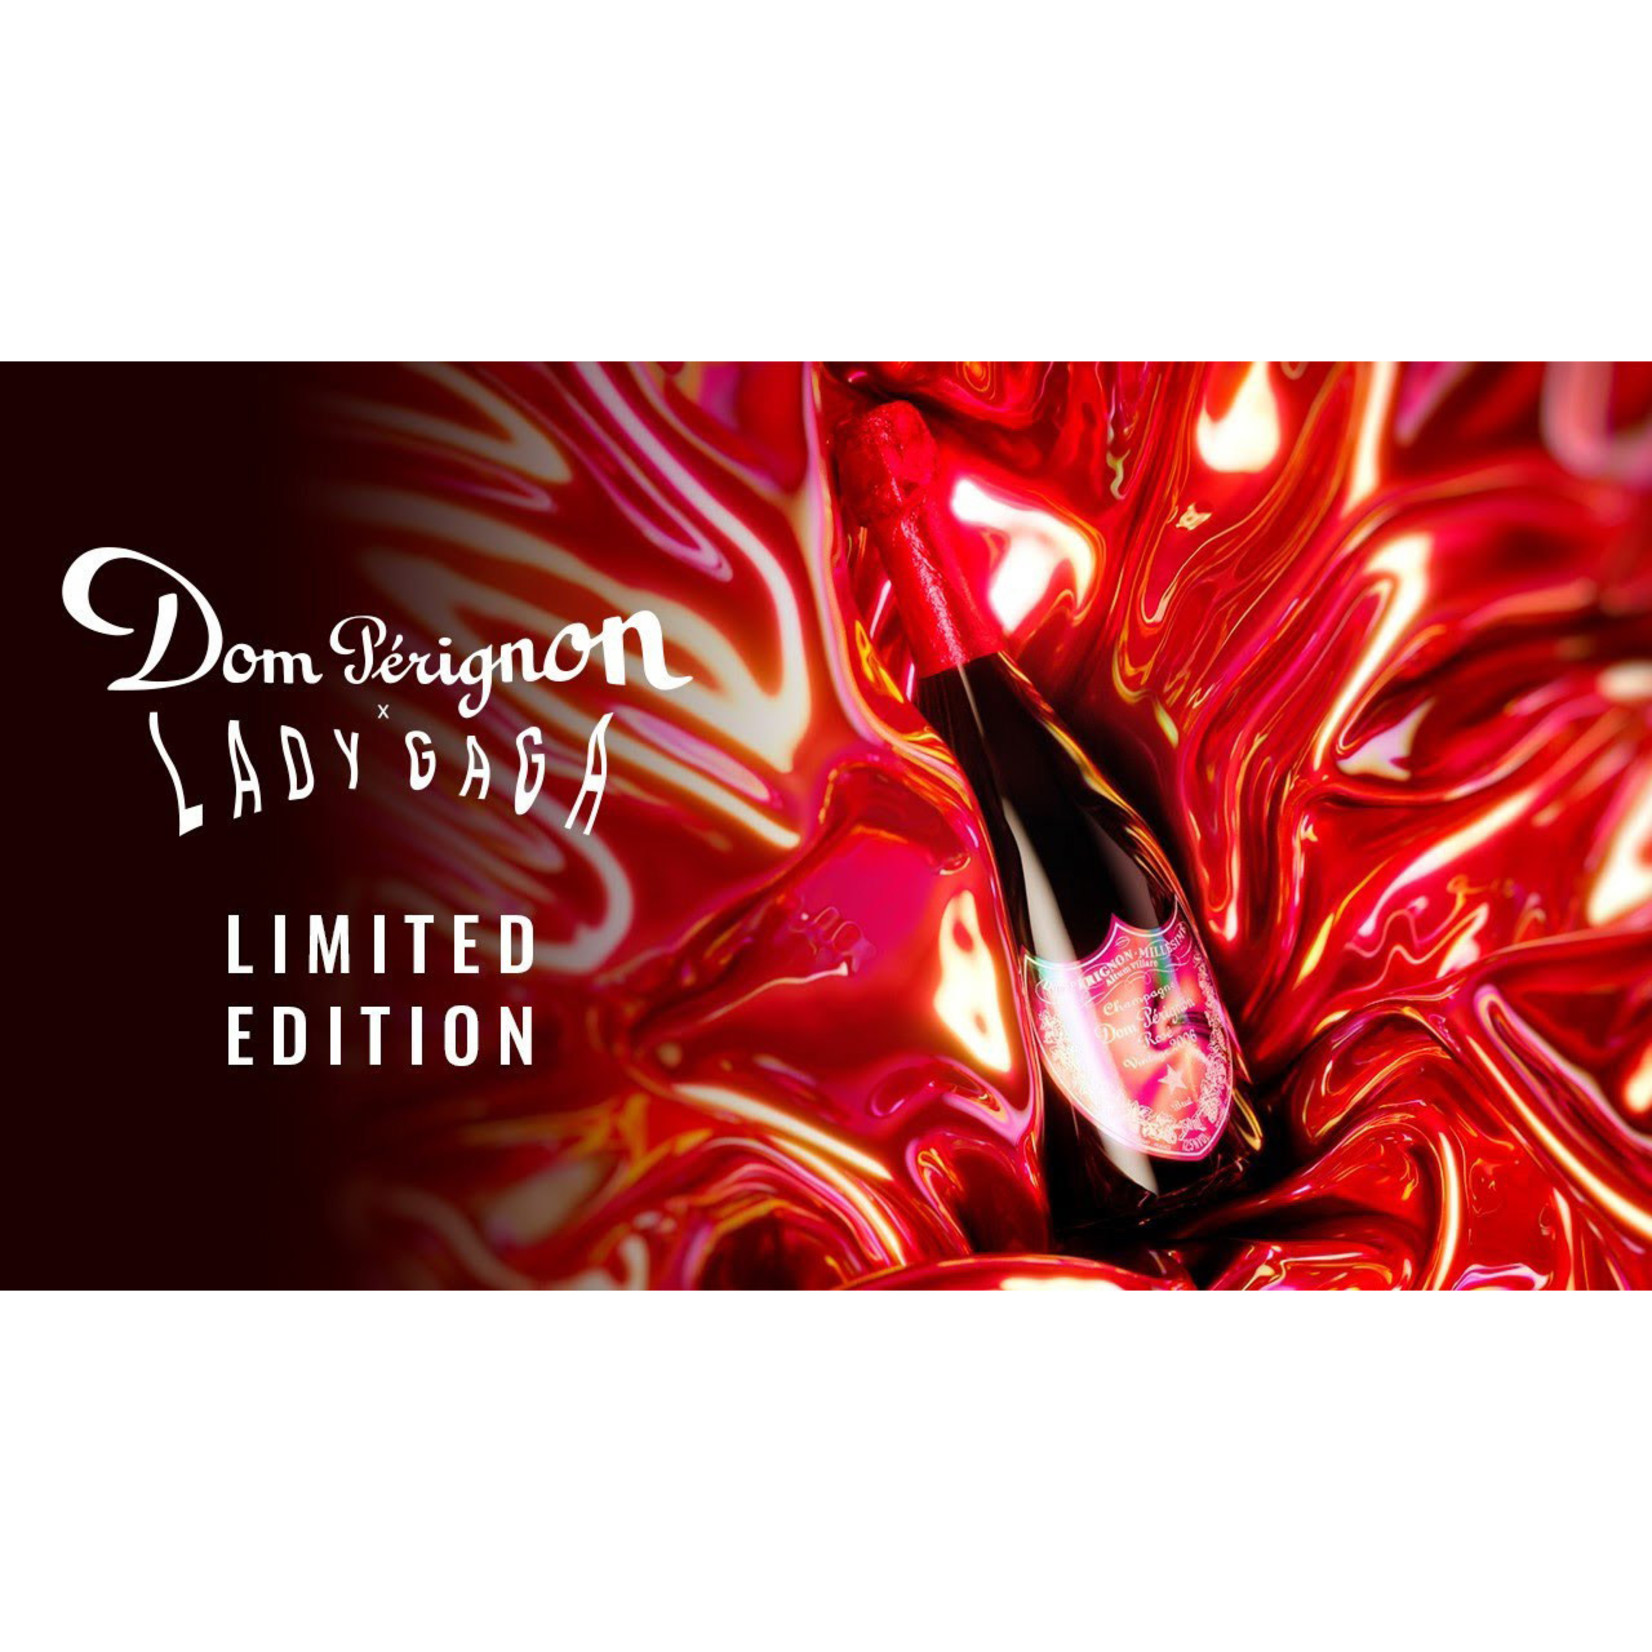 Dom Perignon Champagne Lady Gaga Edition